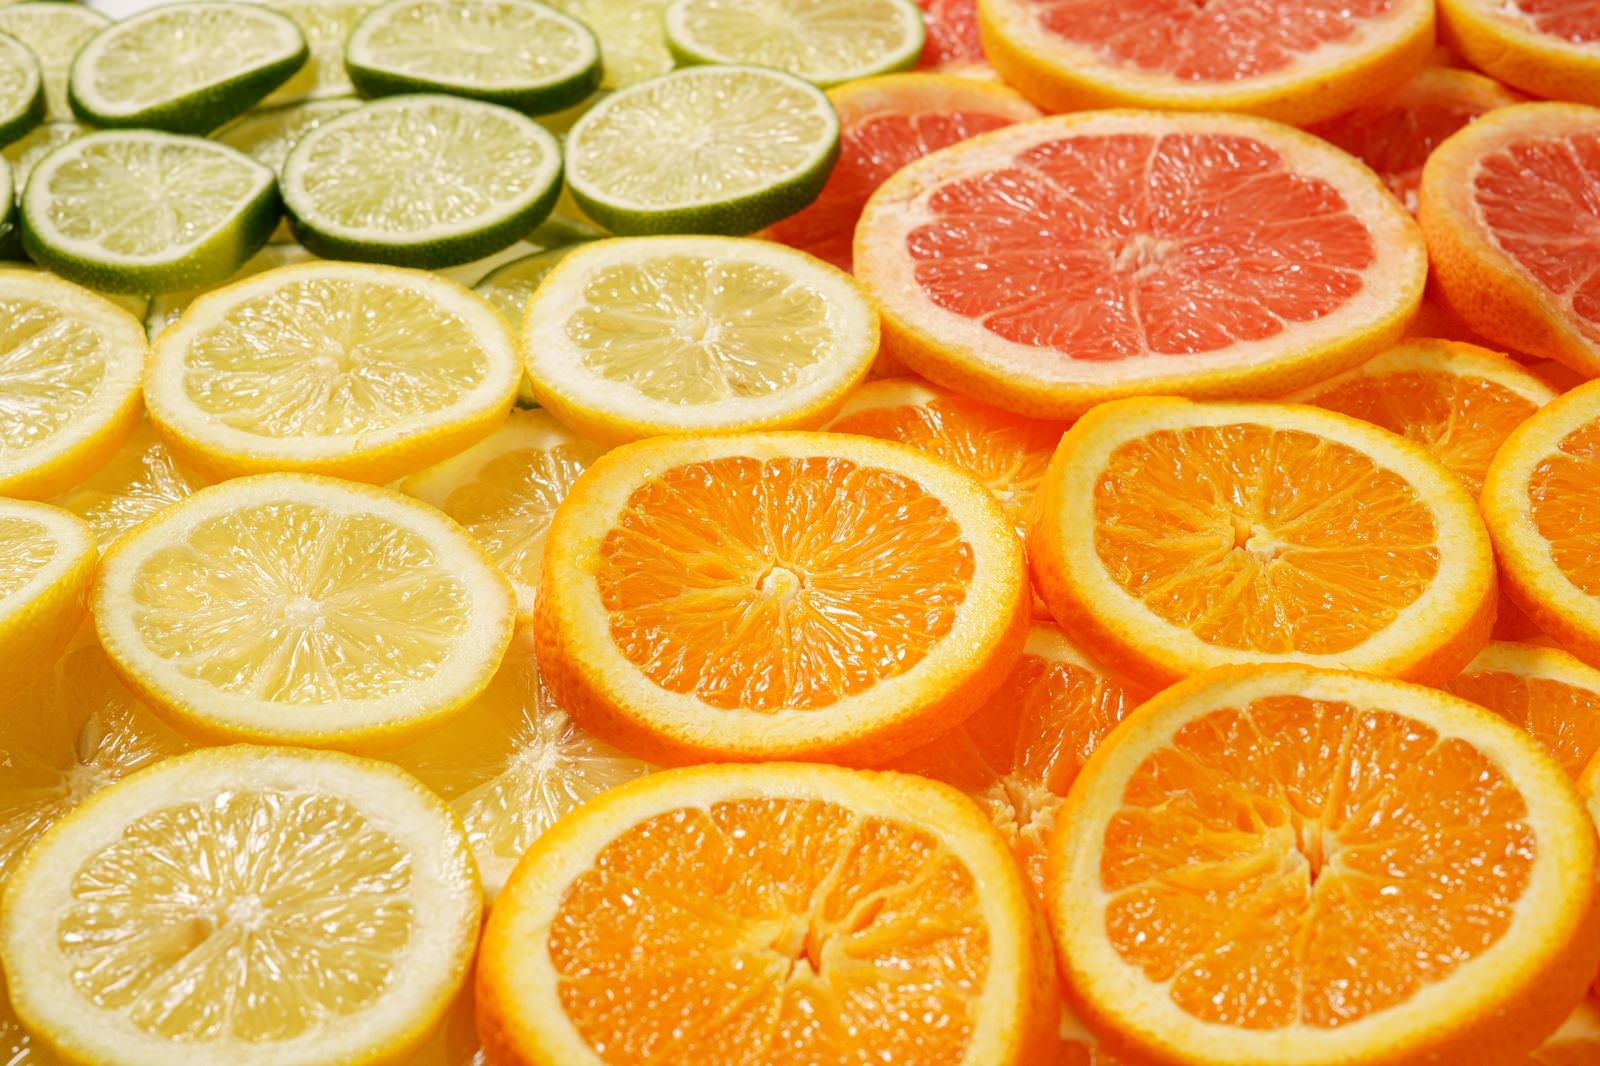 「レモンやライム、オレンジにグレープフルーツのカットフルーツ」の写真